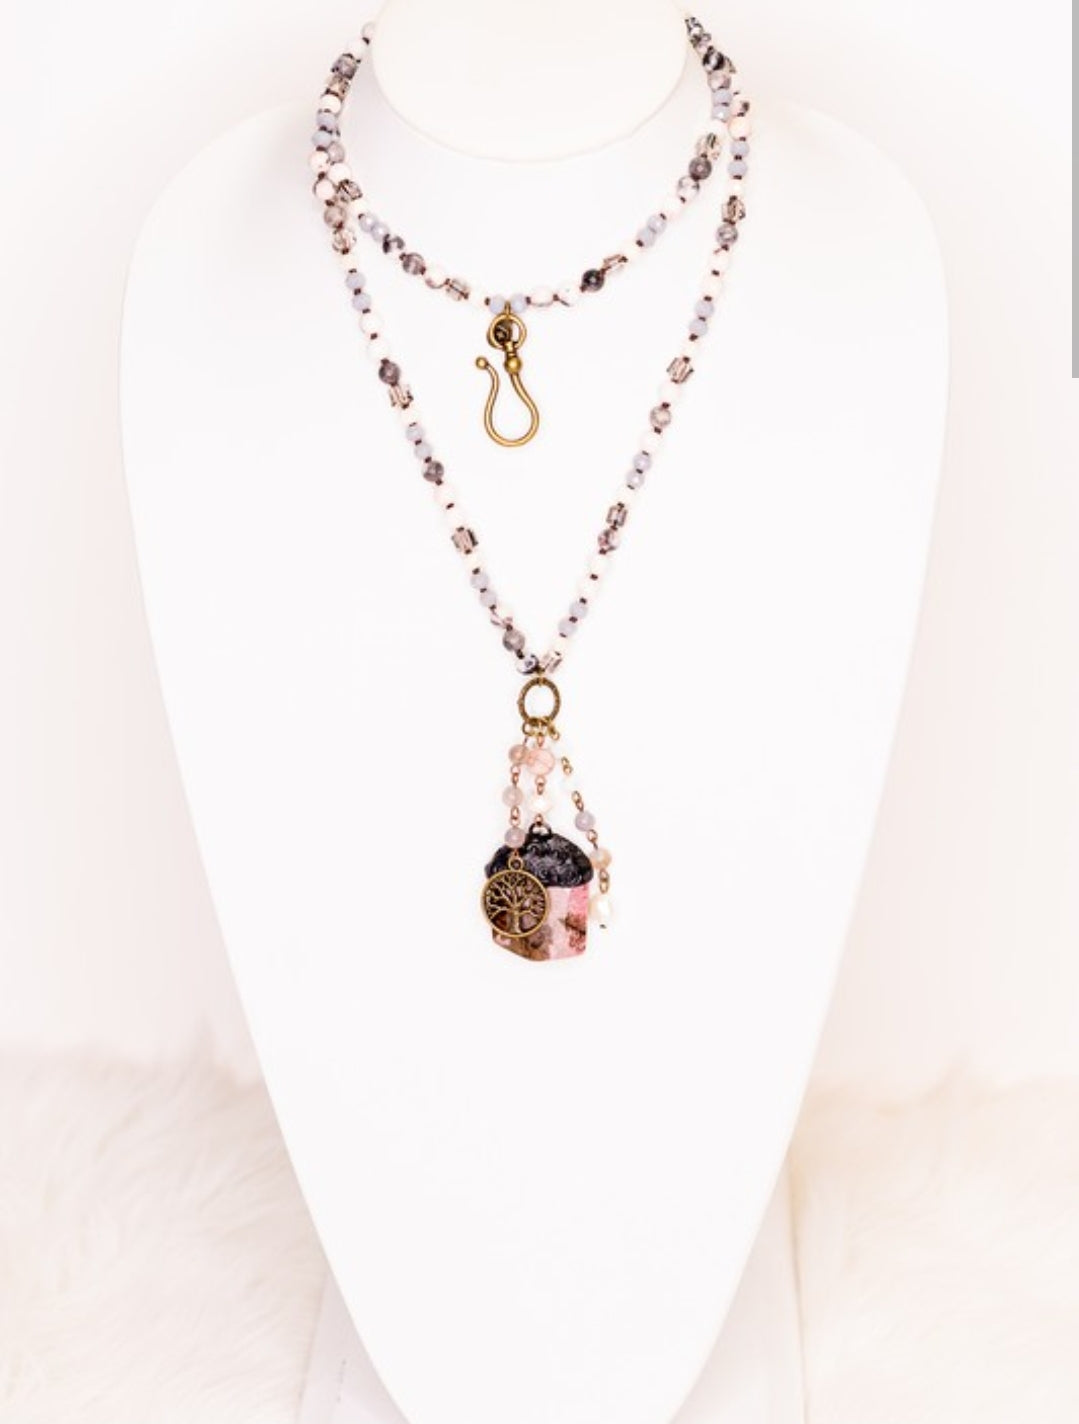 Lavender Fields pendant necklace